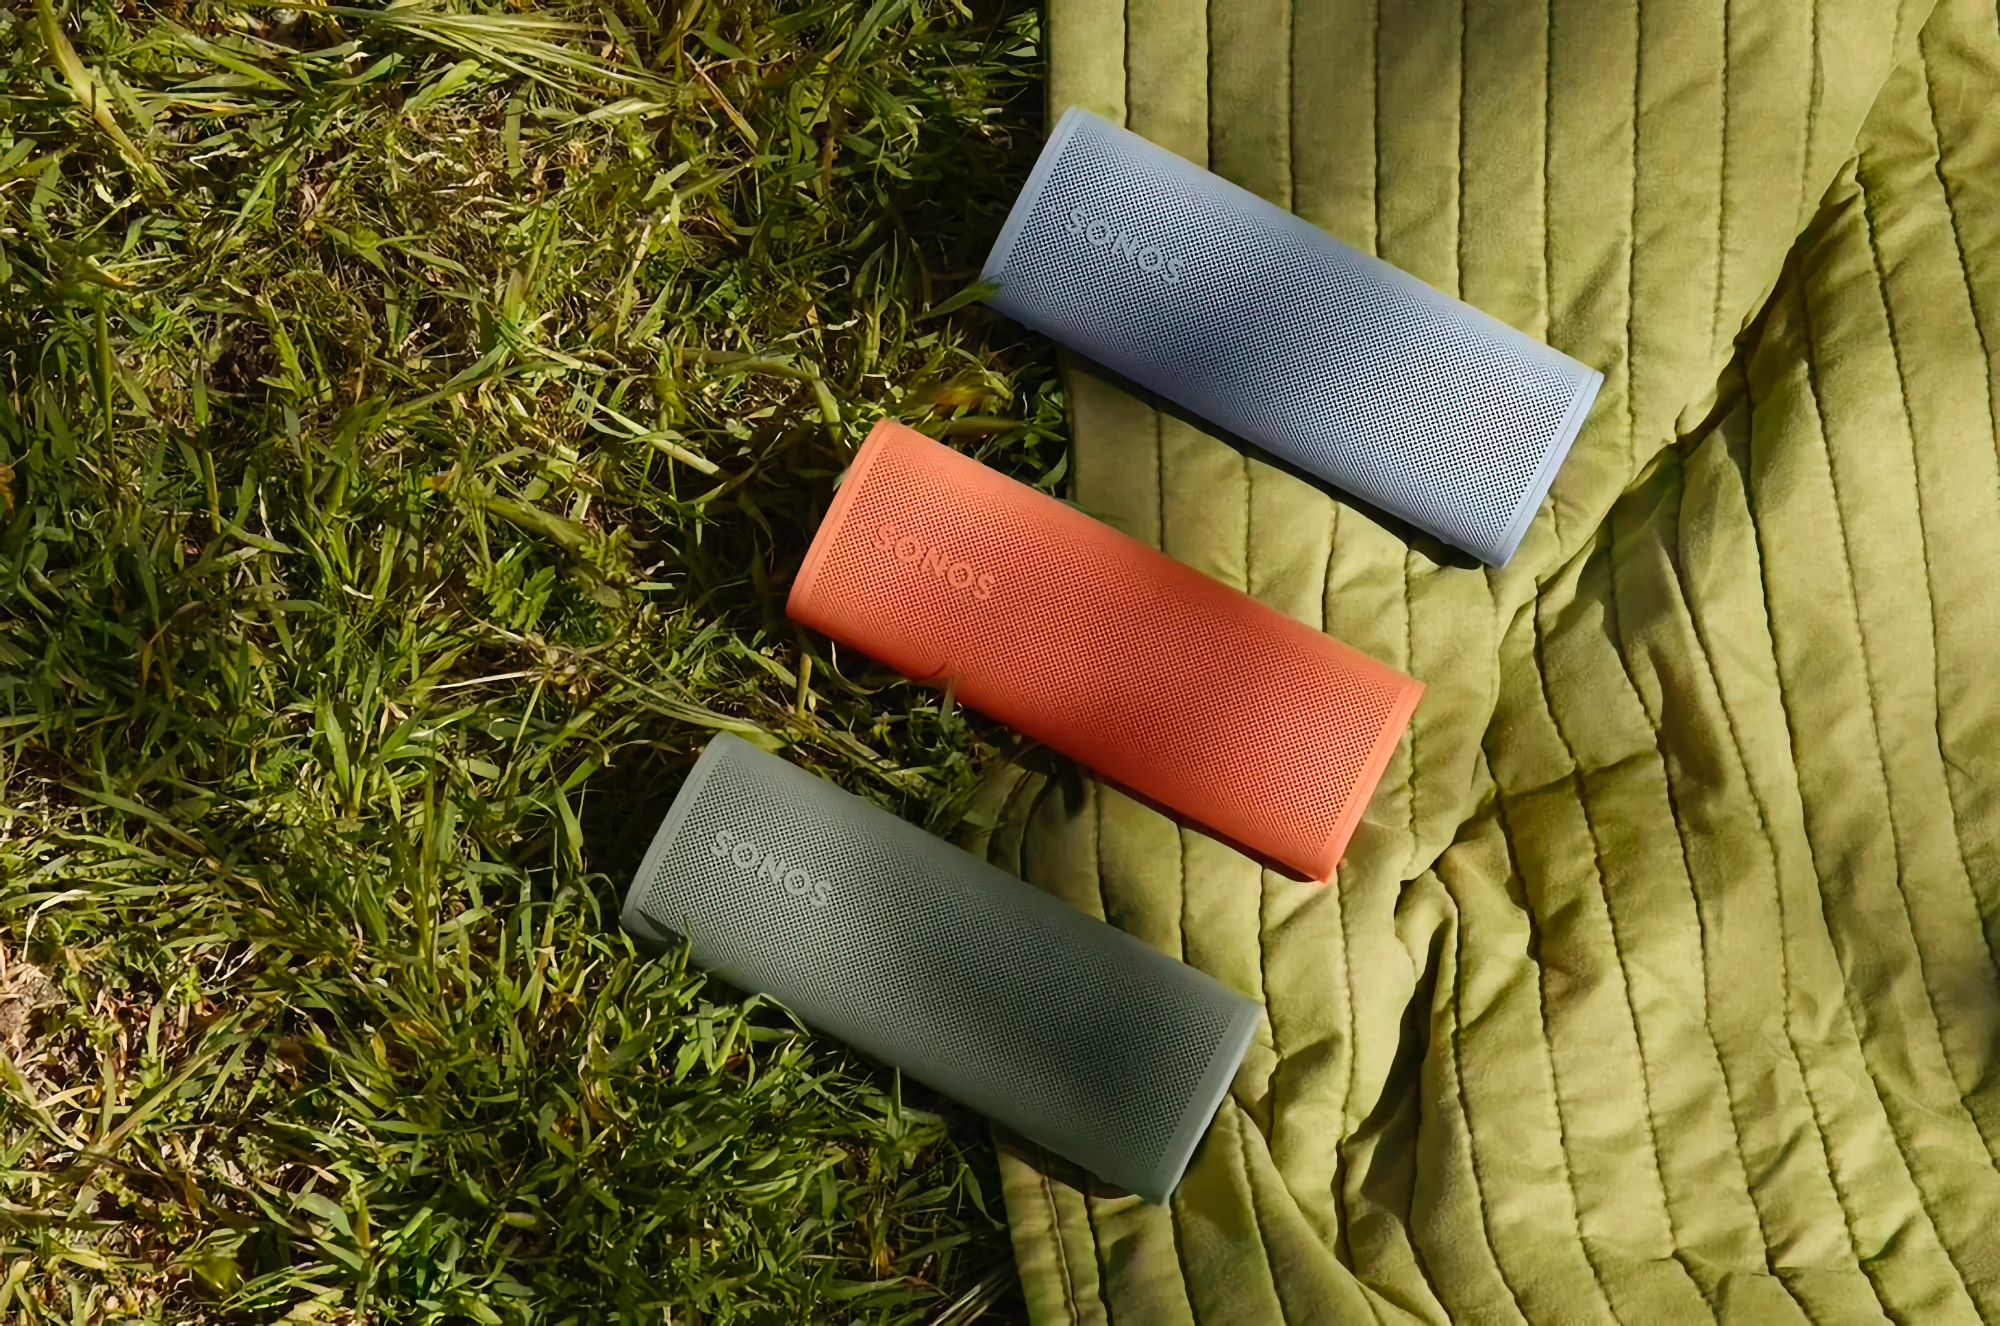 Sonos zaprezentował kompaktowy głośnik Roam 2, który zapewnia do 10 godzin pracy na baterii i kosztuje 179 USD.